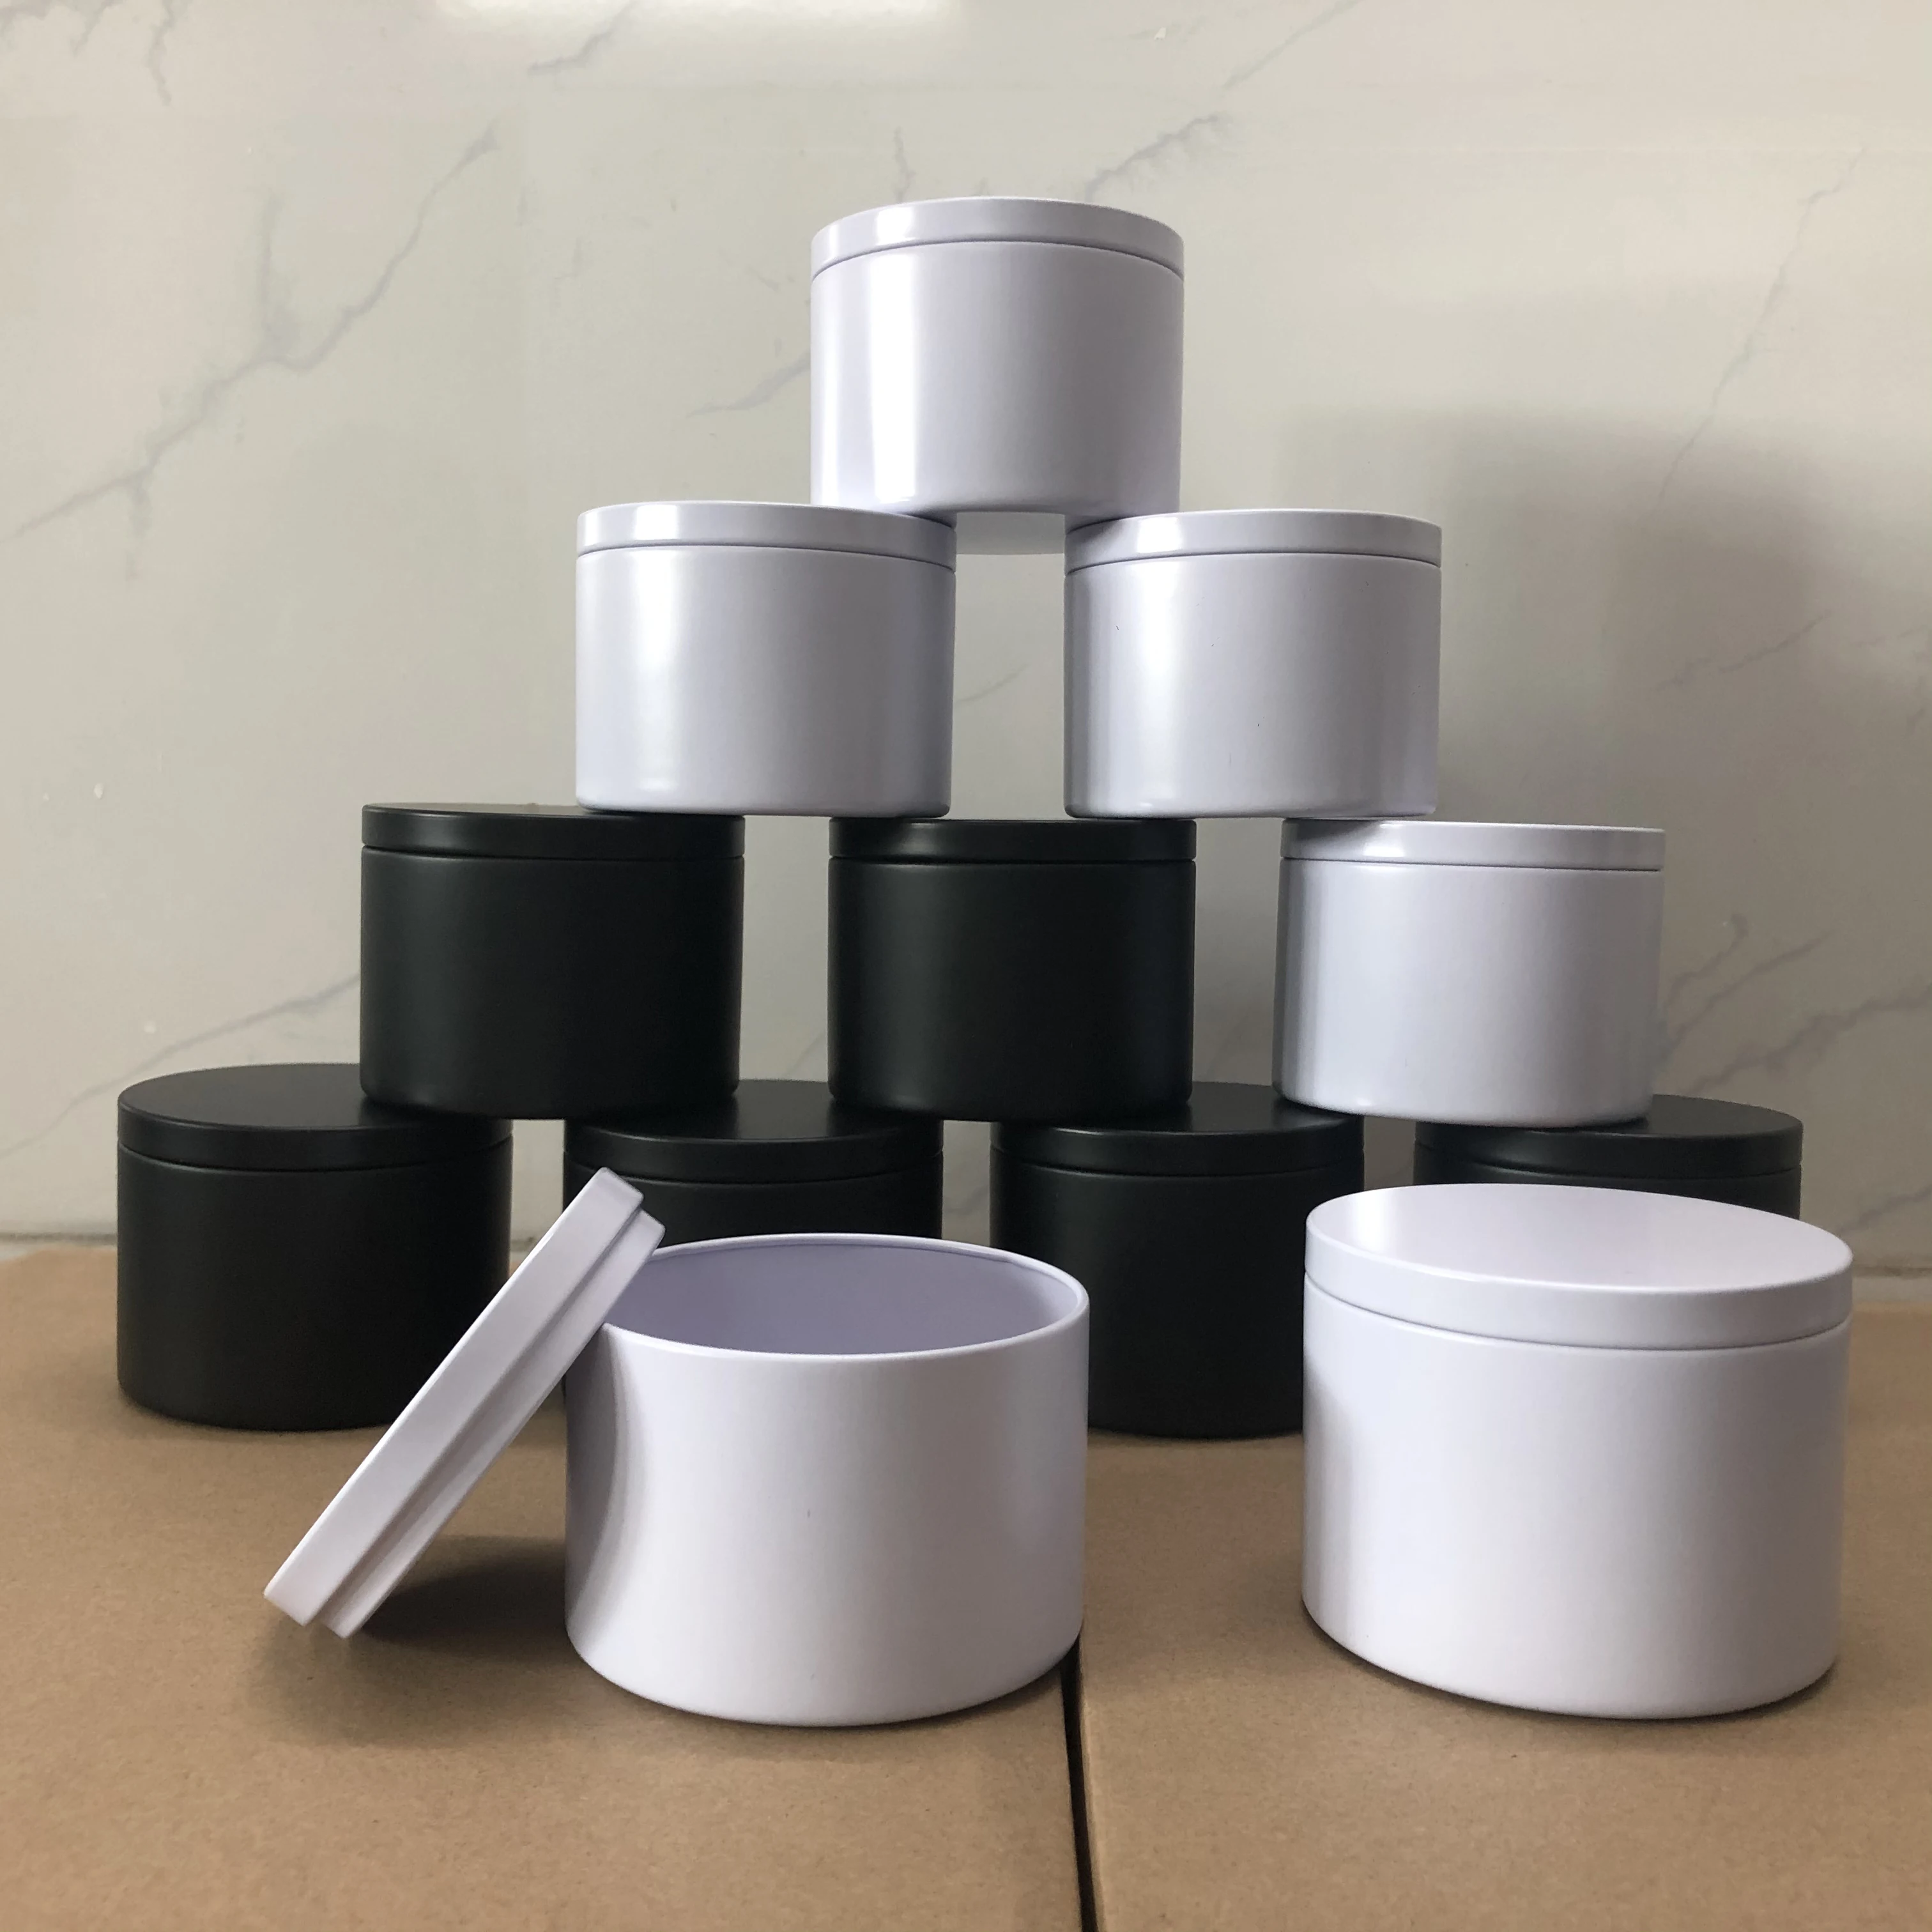 Wholesale Candle Containers Lids  12 Oz Candle Jars Lids Wholesale - 12pcs  8oz White - Aliexpress